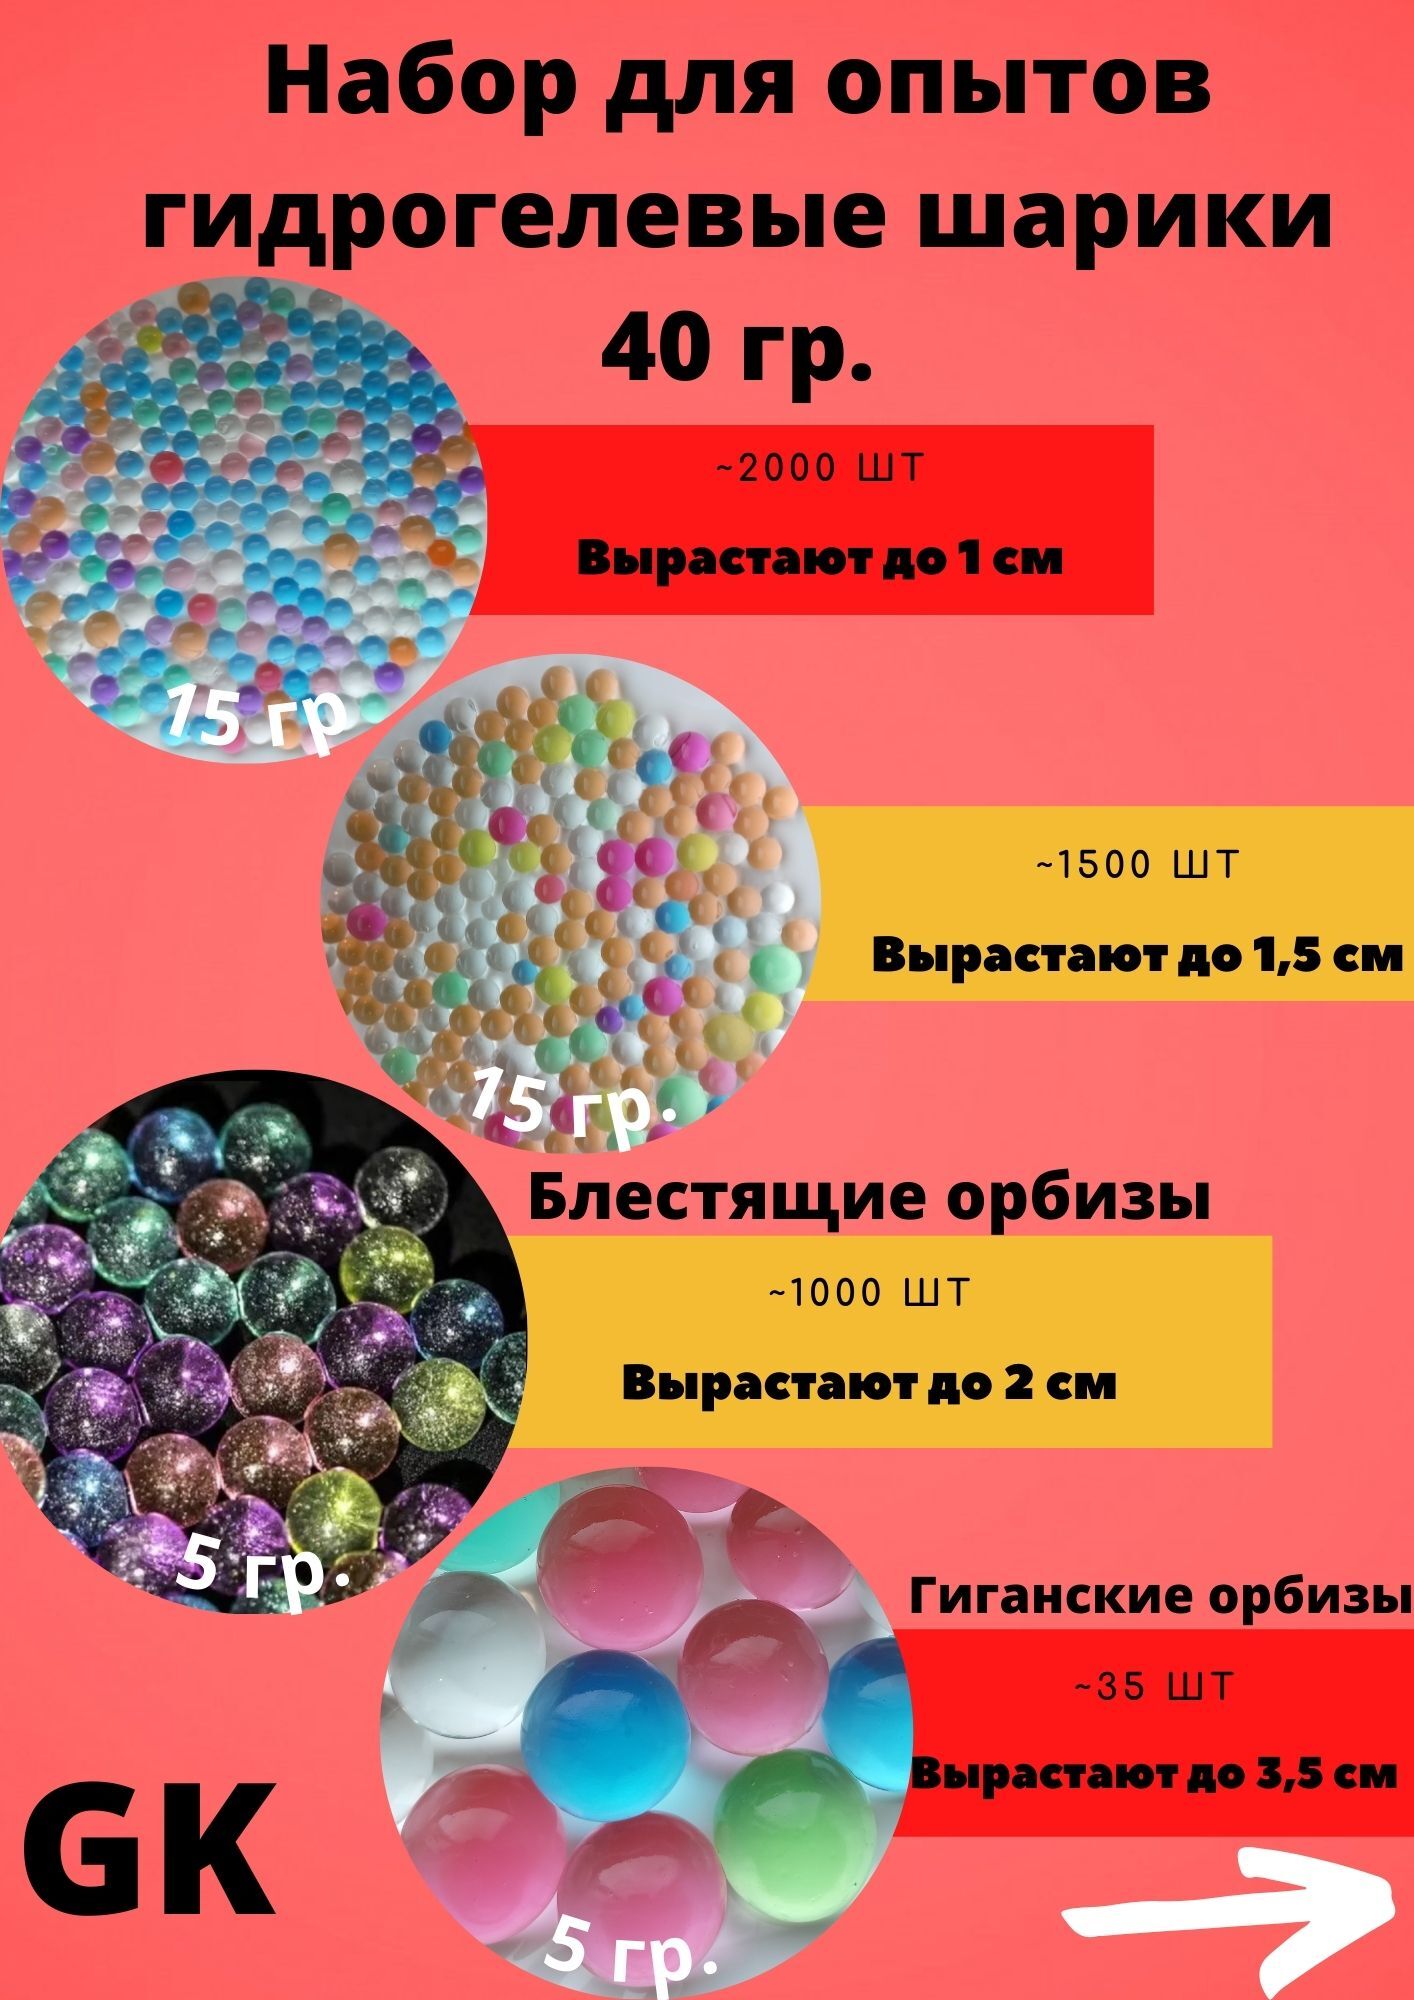 Эксперименты с растущими шариками (орбизами) – опыты и эксперименты для детей от профессора Николя